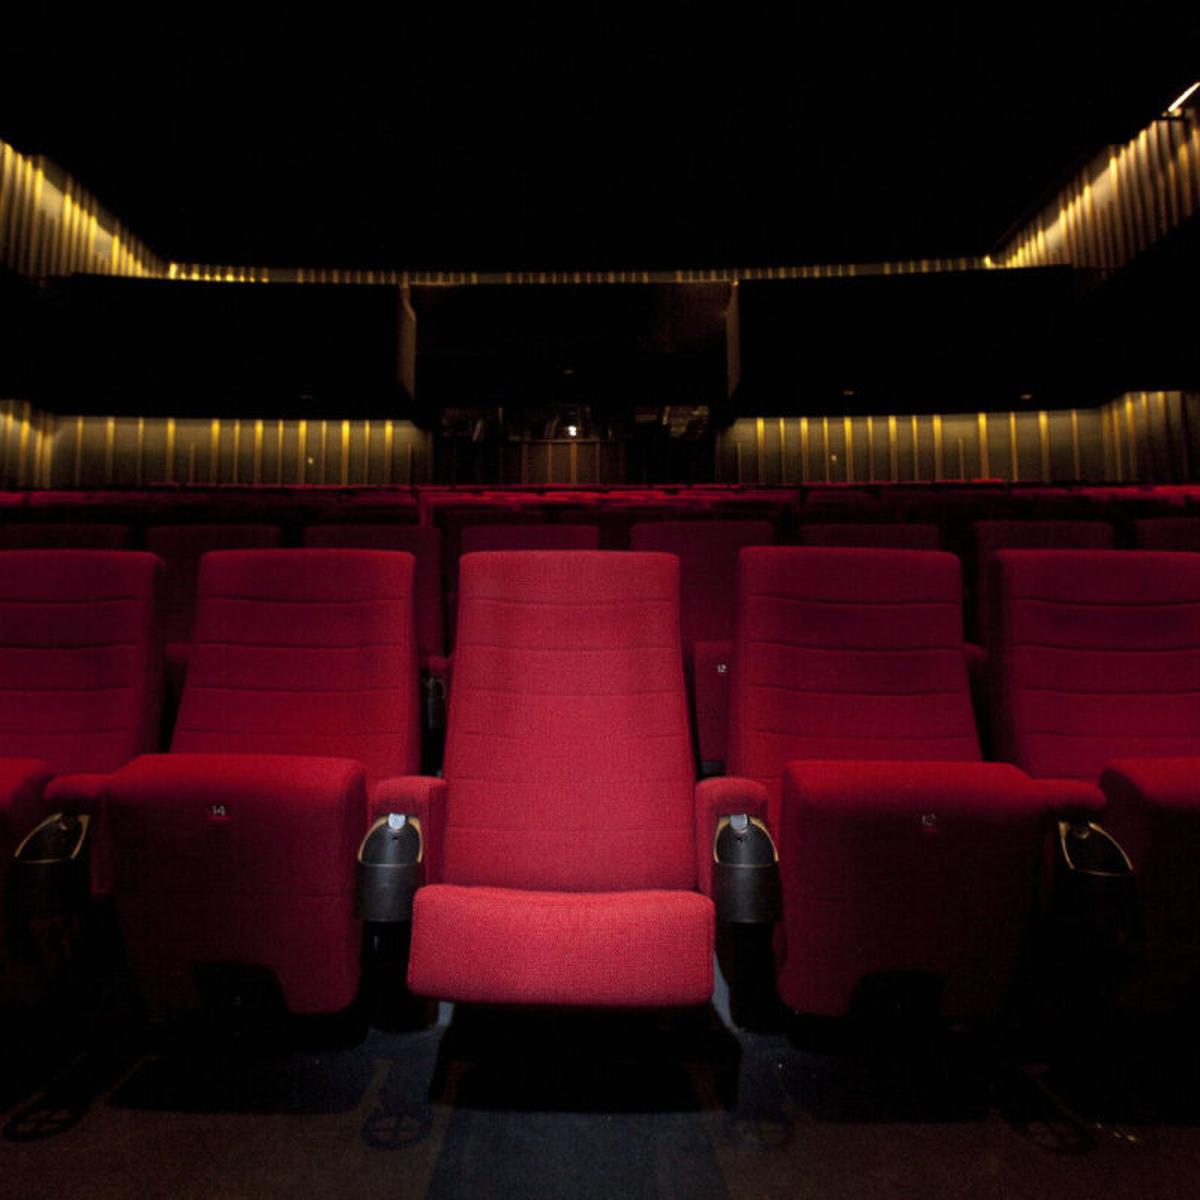 Theater seating. Кресла в кинотеатре. Кинотеатр вид спереди. Кинотеатр кресла фон. Зал с сиденьями.